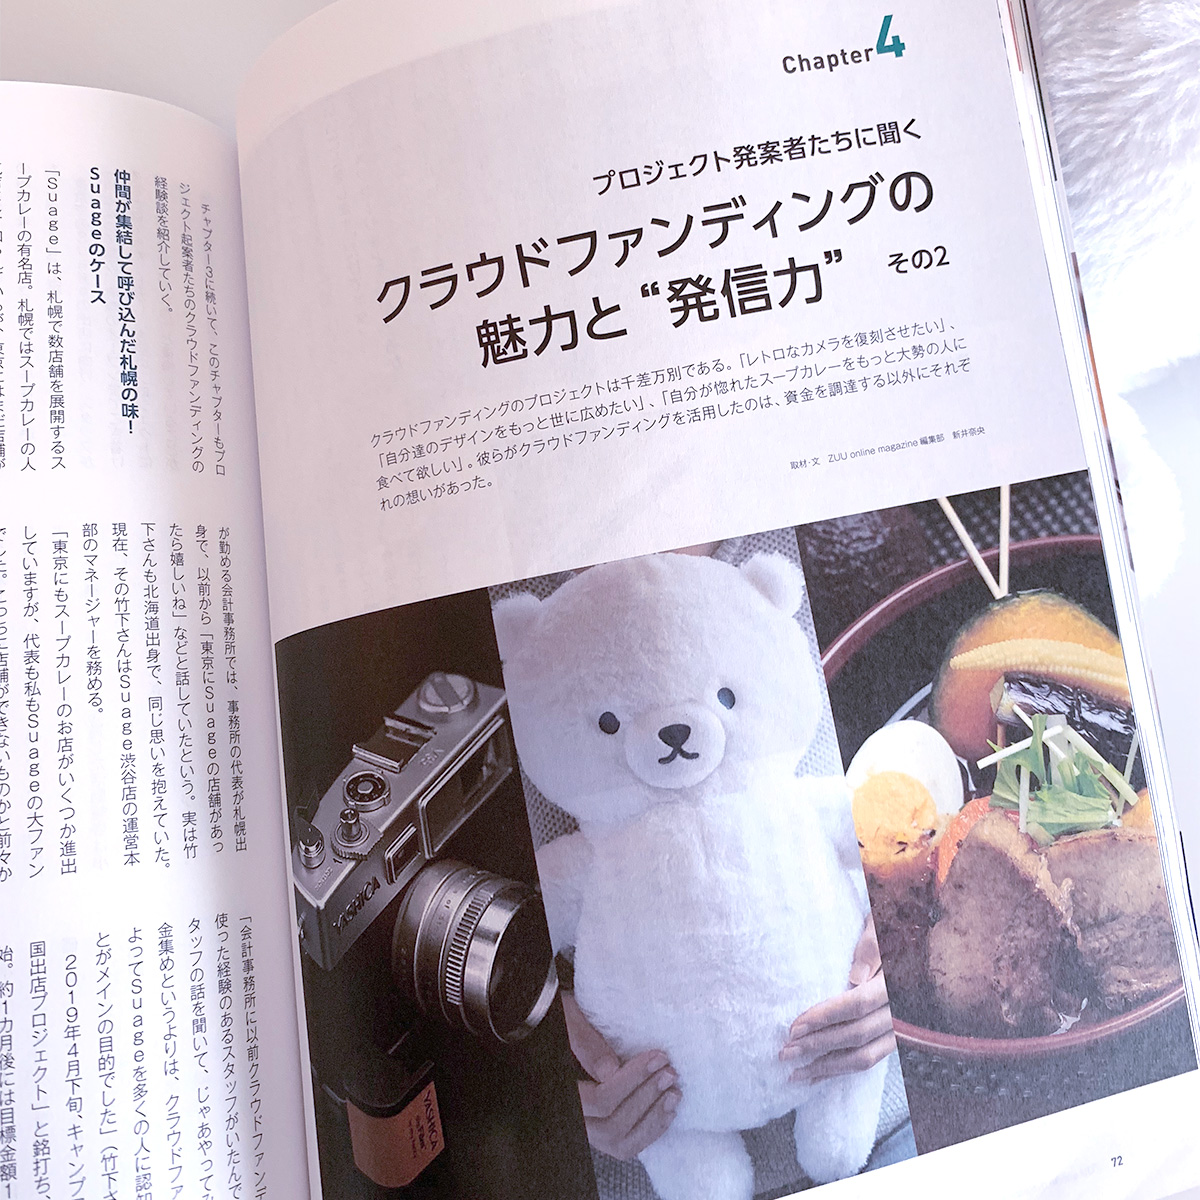  ZUU online magazine インタビューが掲載されました。